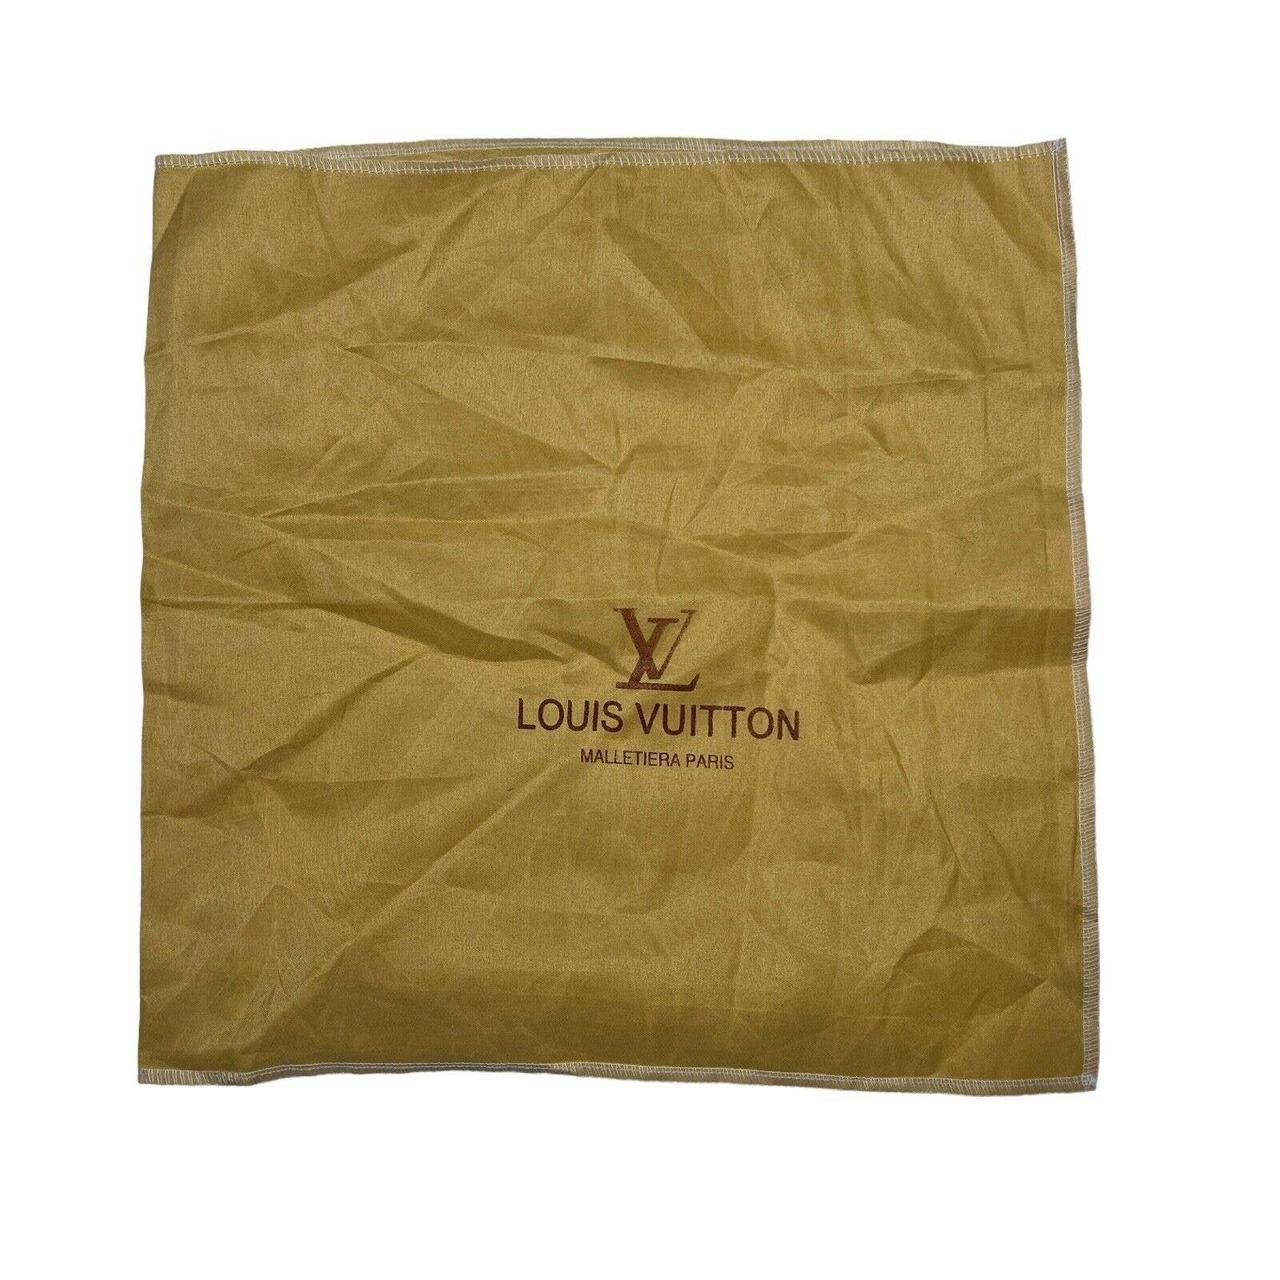 Louis Vuitton Dust Bag Tags For Sale